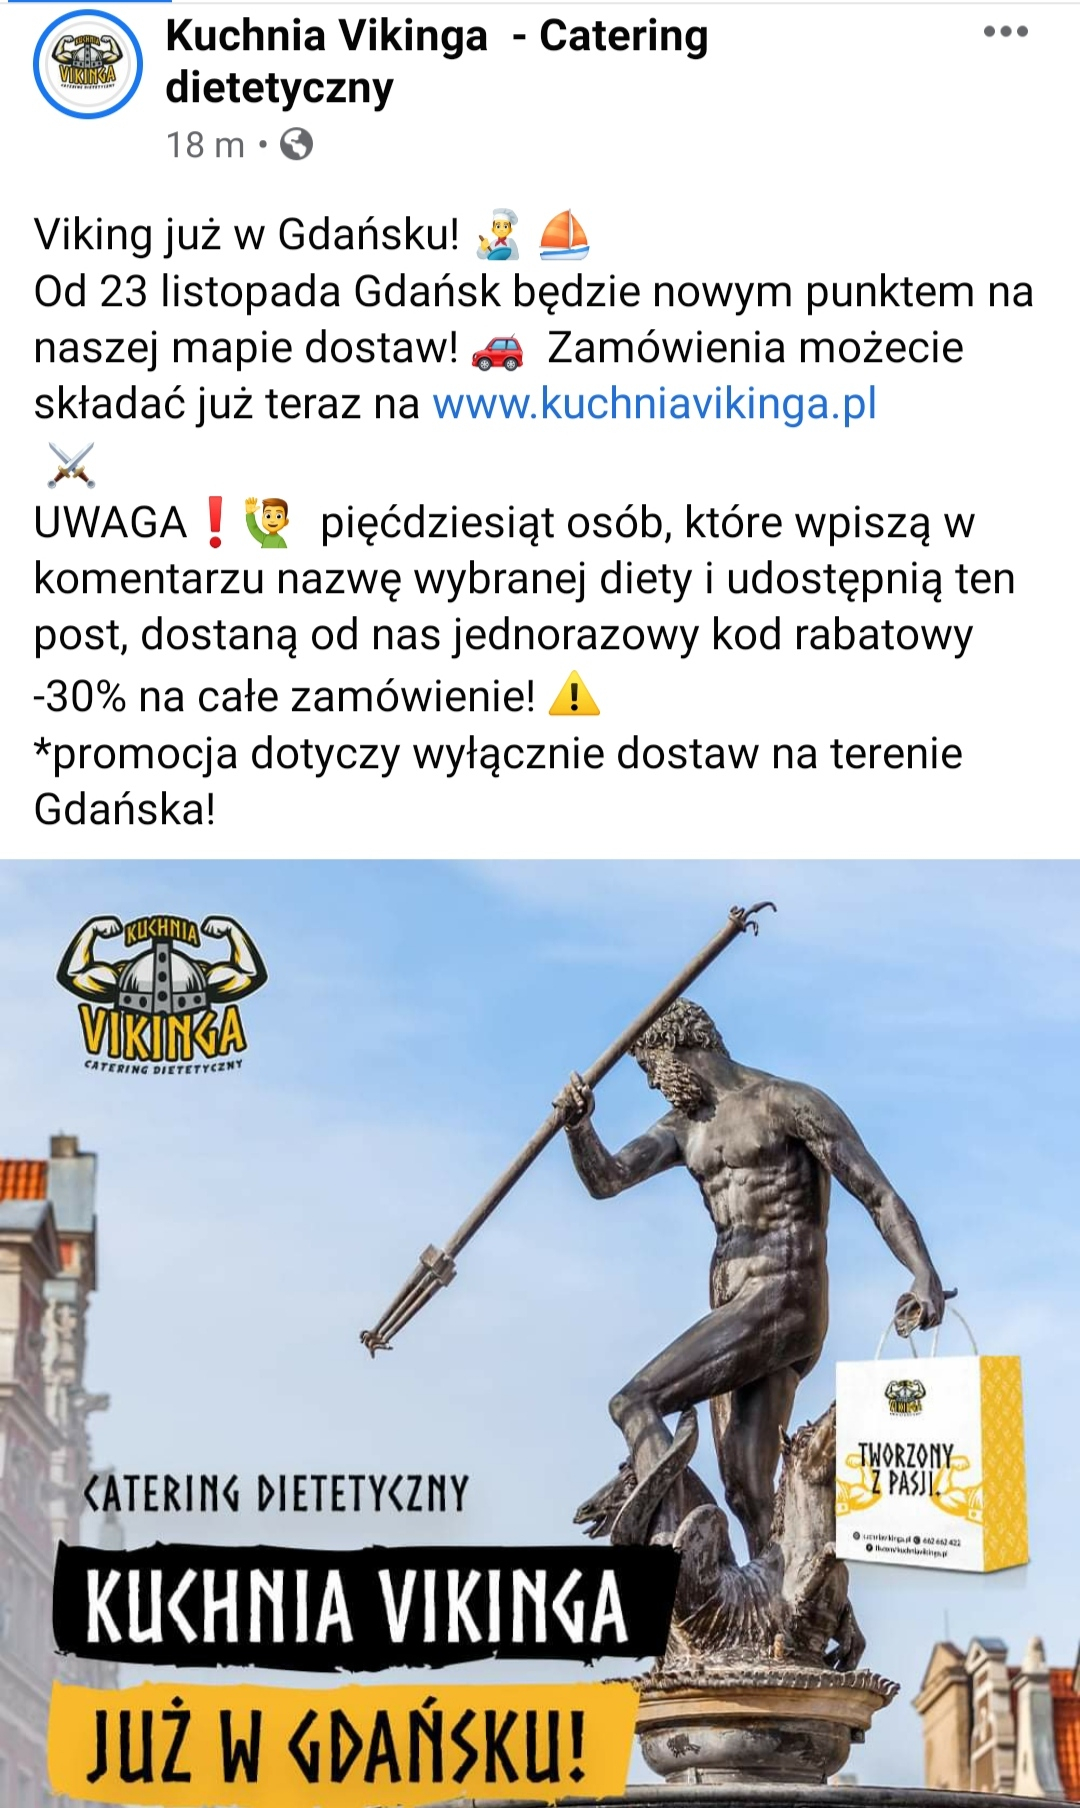 30 Znizki Na Wybrana Diete W Kuchni Vikinga W Lokalizacji Gdanska Pepper Pl